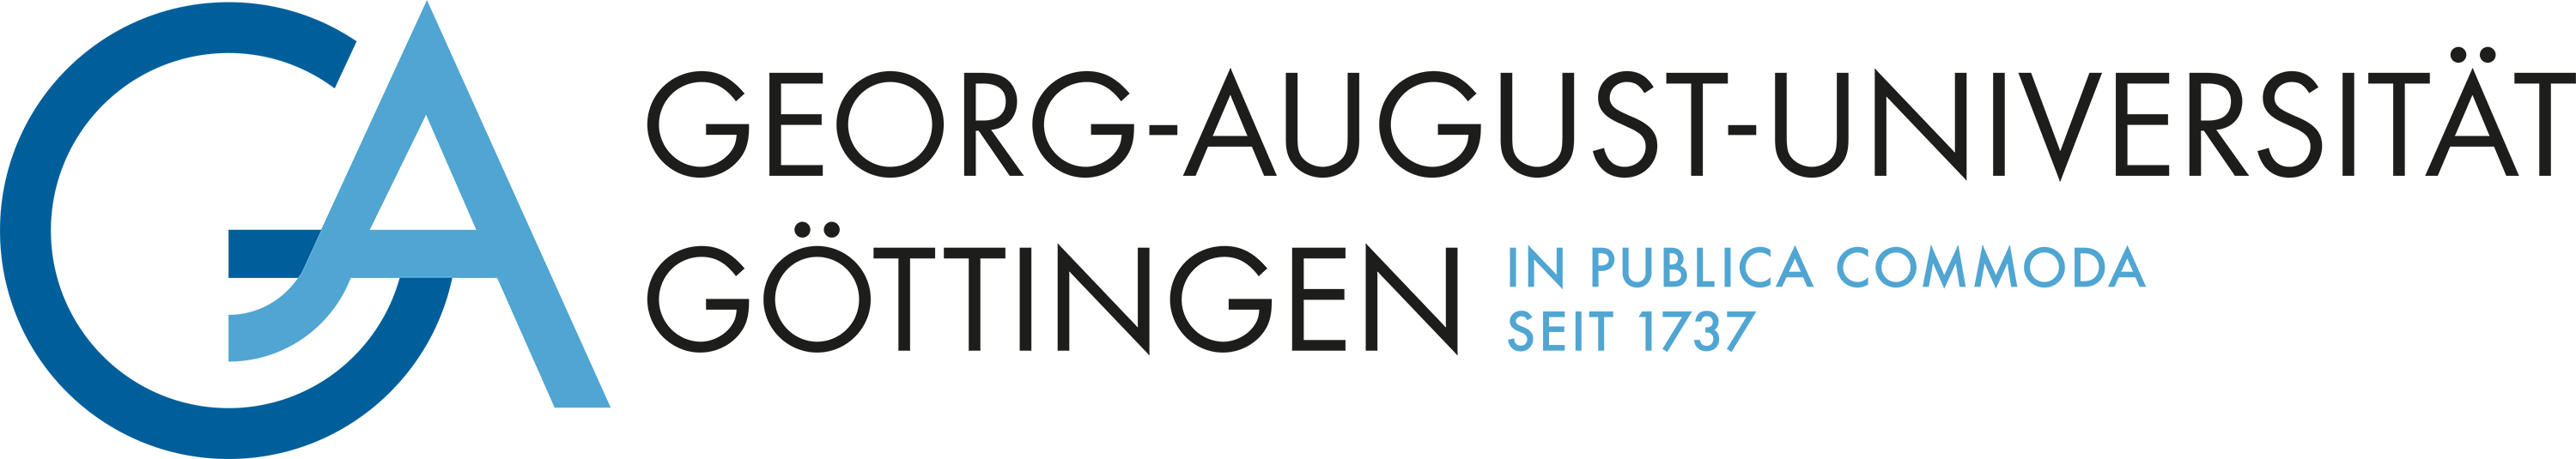 Uni Goettingen logo